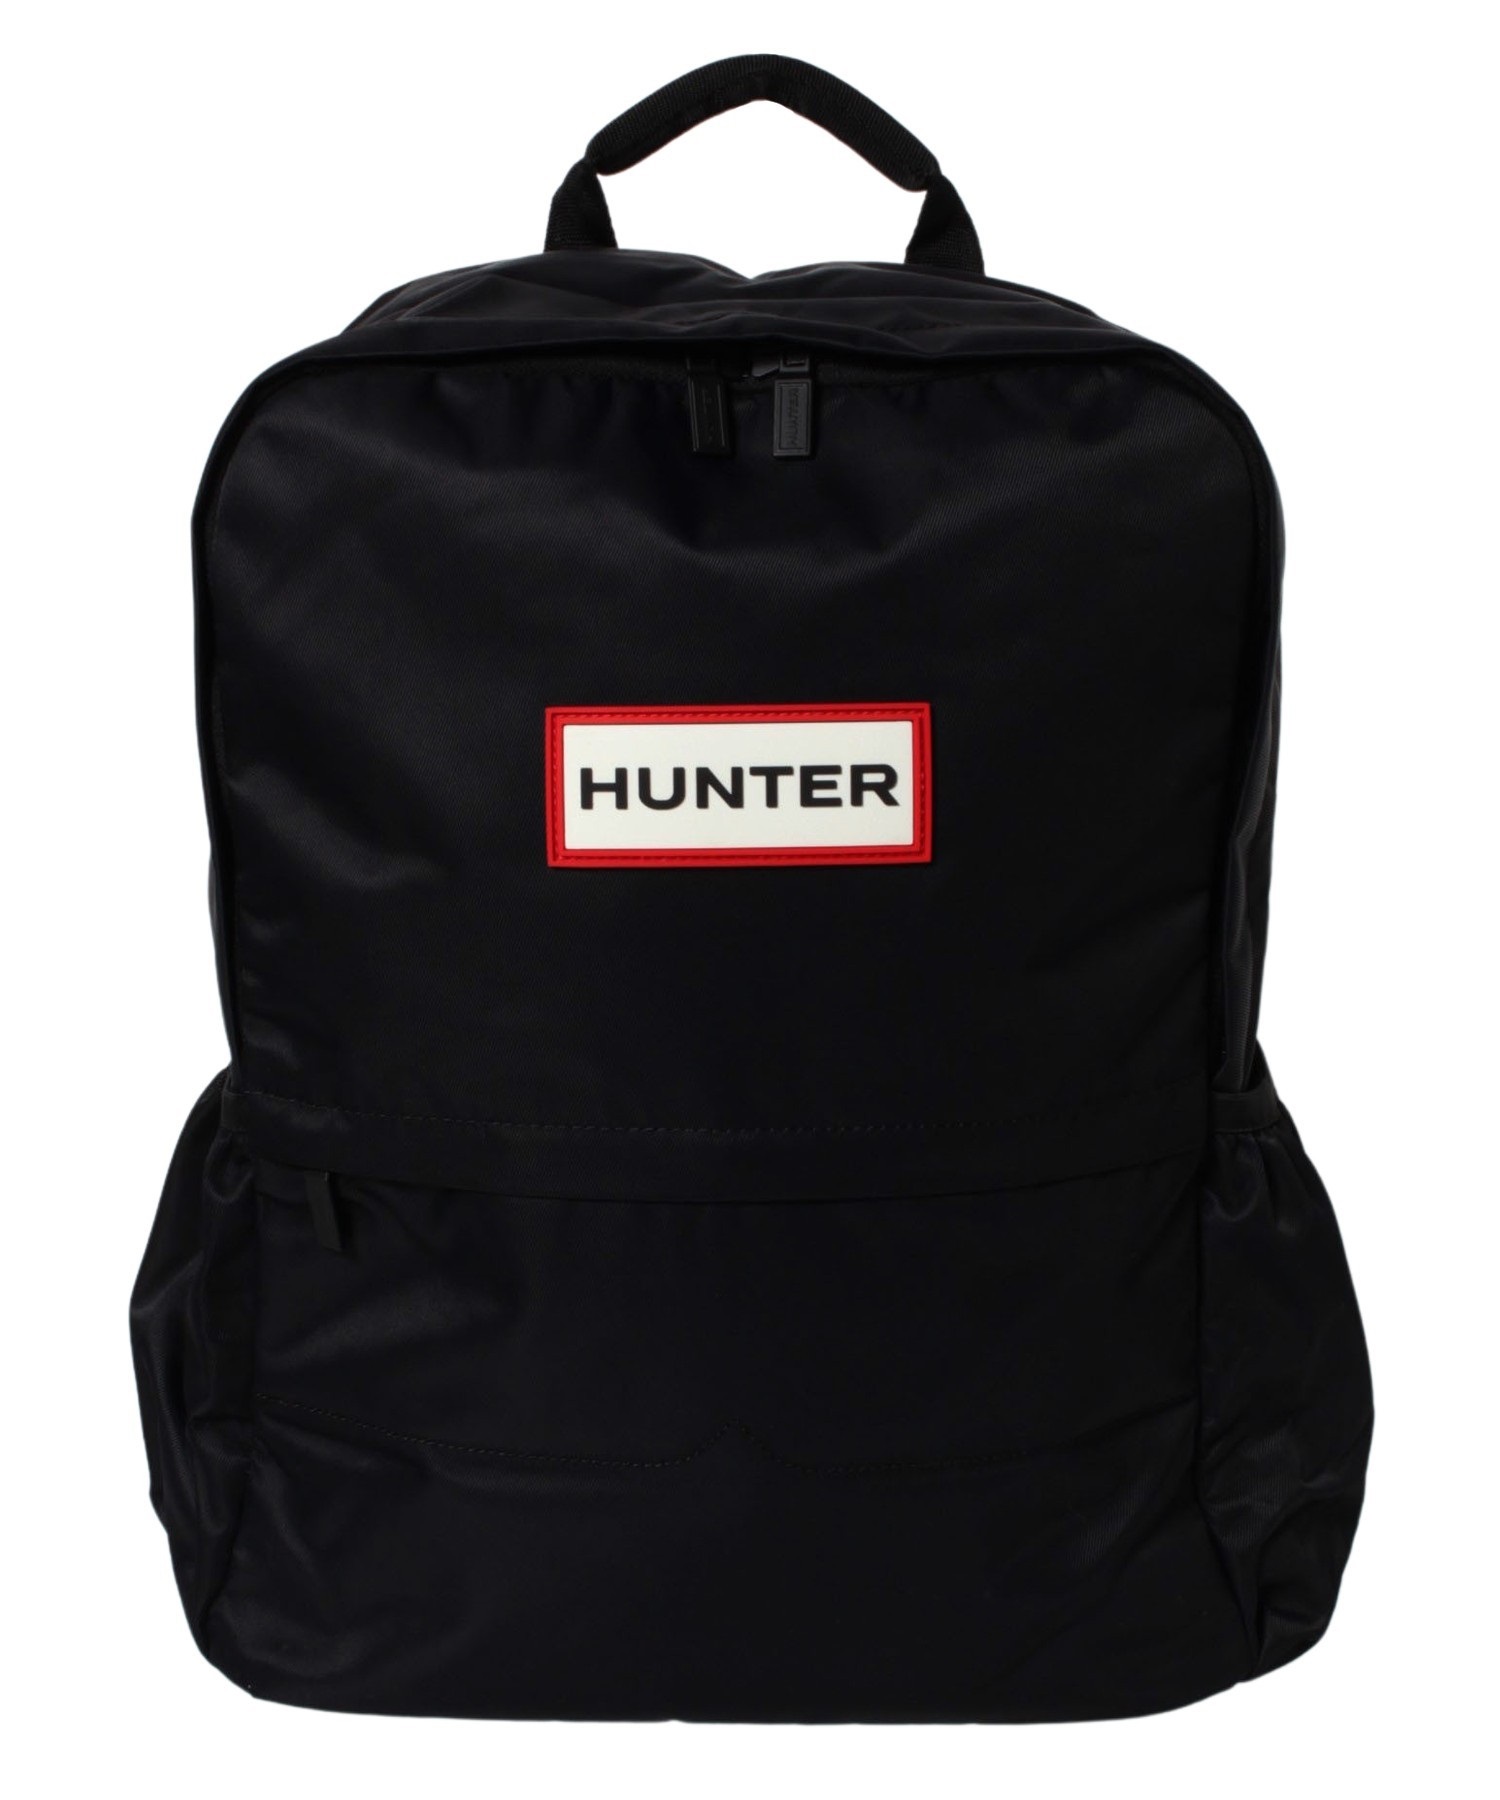 HUNTER/ハンター UBB6028KBM メンズ バッグ 鞄 リュック リュックサック KK C30(BK-F)